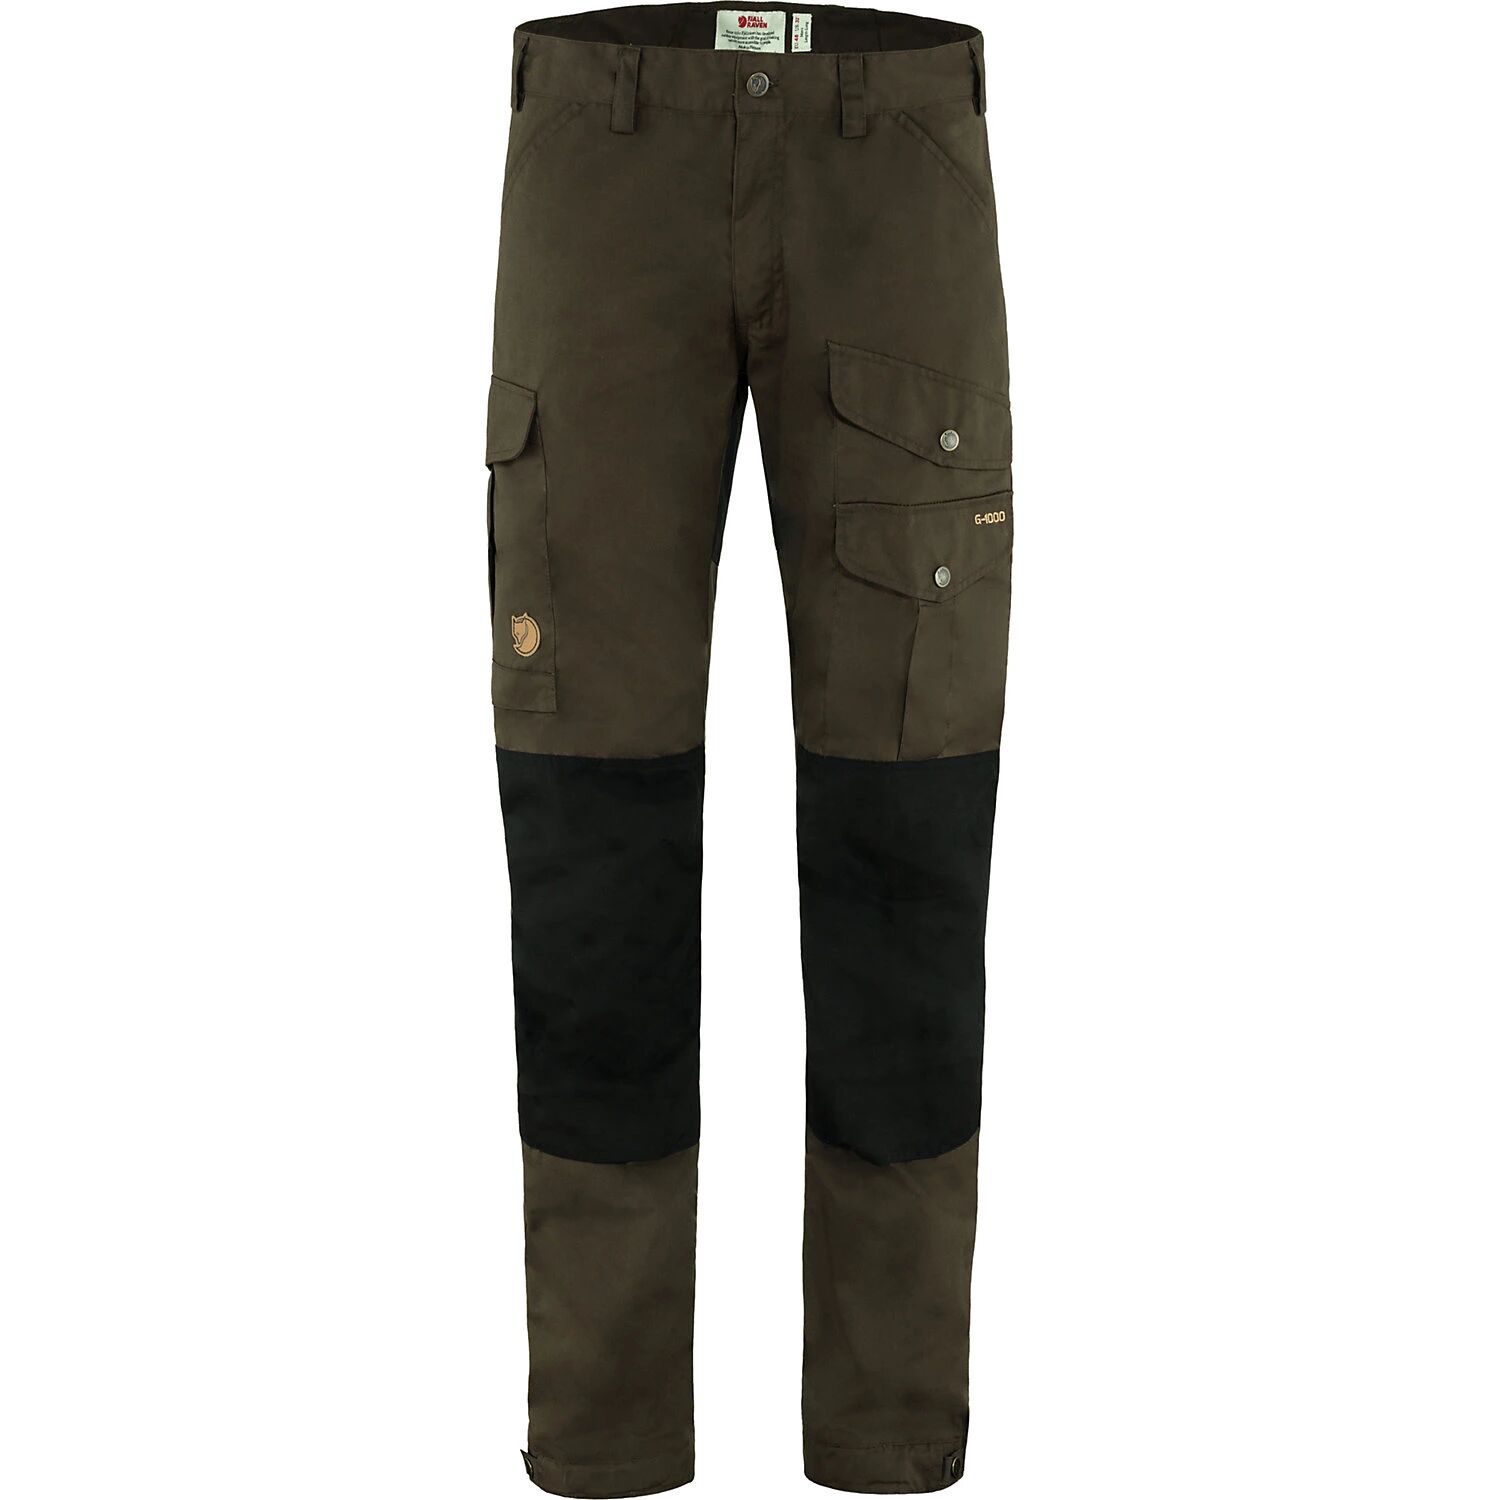 Fjallraven Men's Vidda Pro Trouser, Size 32, Brown